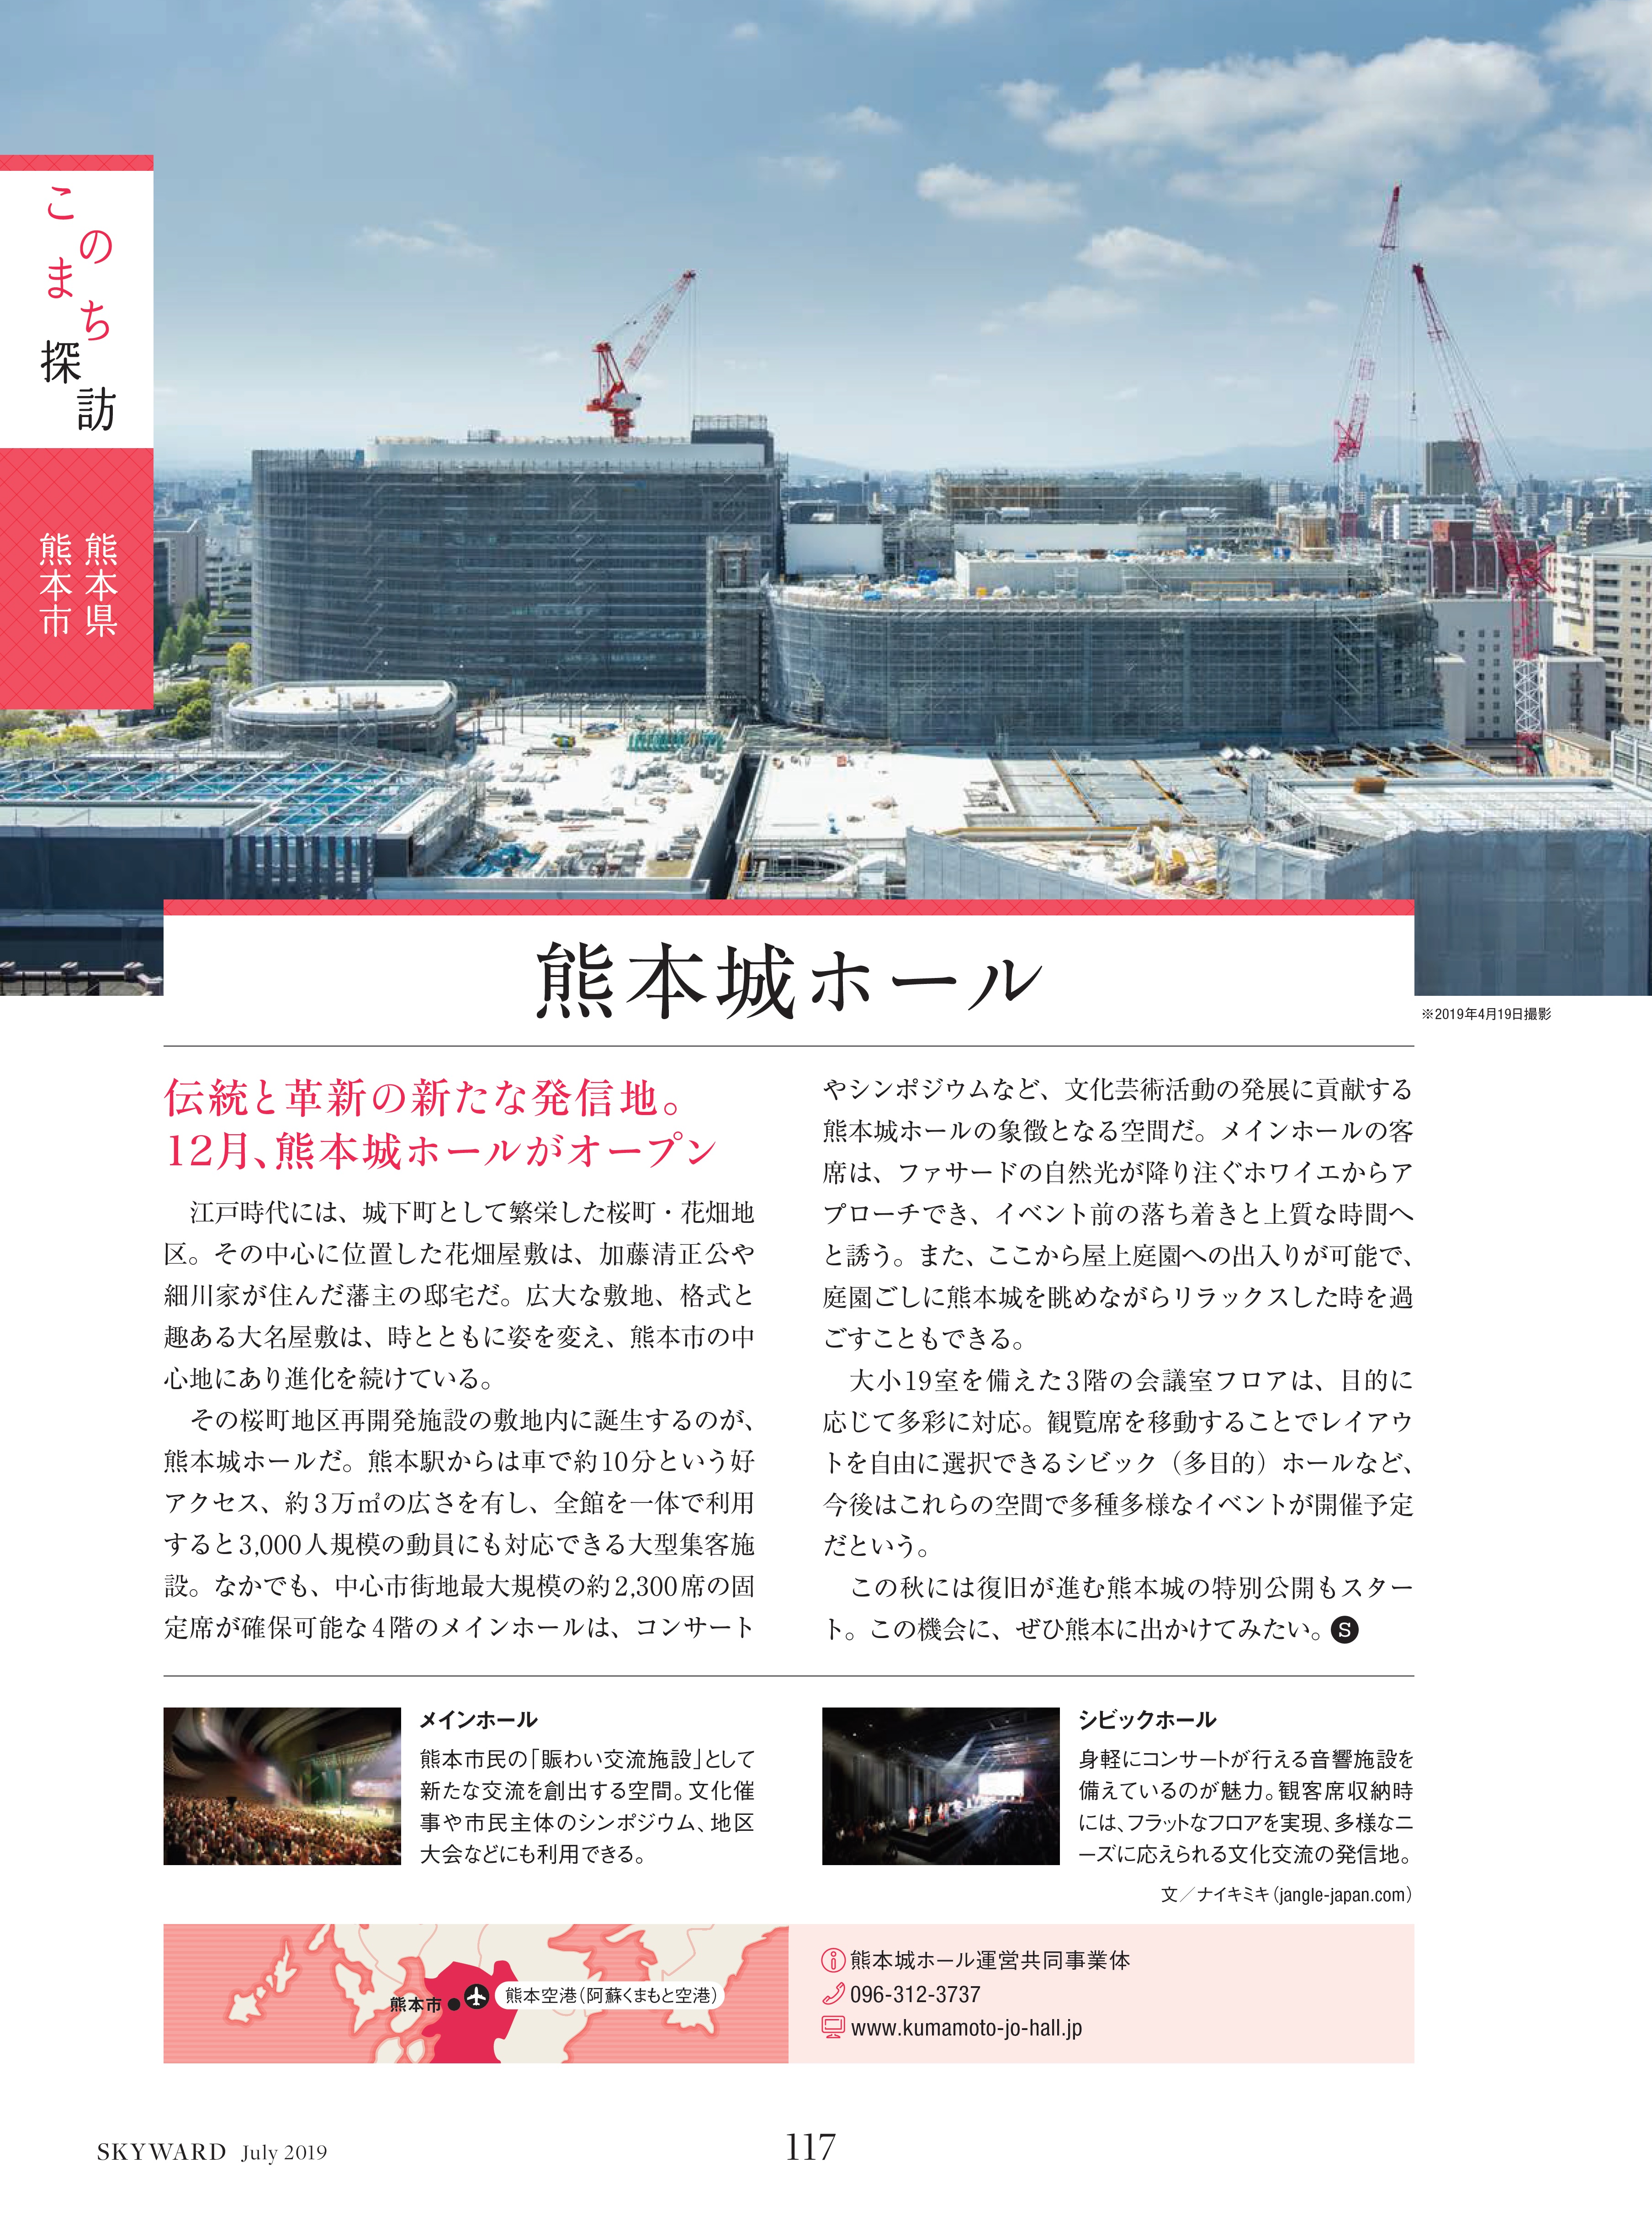 熊本城ホールがSKY WARD（JALグループ機内誌）に掲載されました！